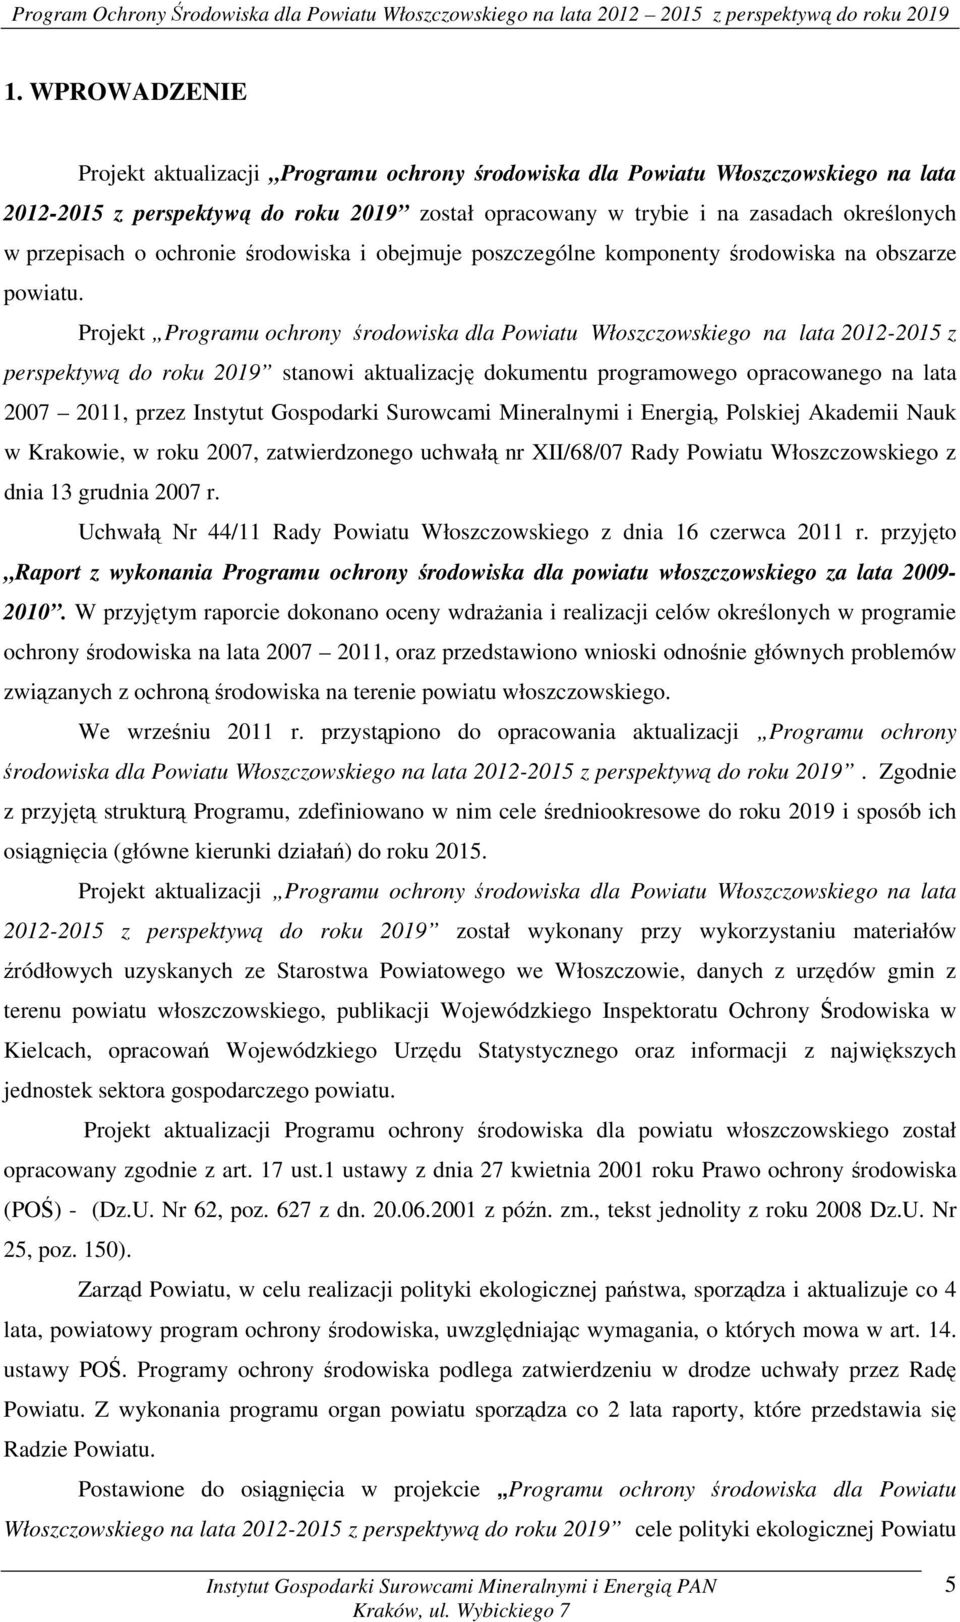 Projekt Programu ochrony środowiska dla Powiatu Włoszczowskiego na lata 2012-2015 z perspektywą do roku 2019 stanowi aktualizację dokumentu programowego opracowanego na lata 2007 2011, przez Instytut